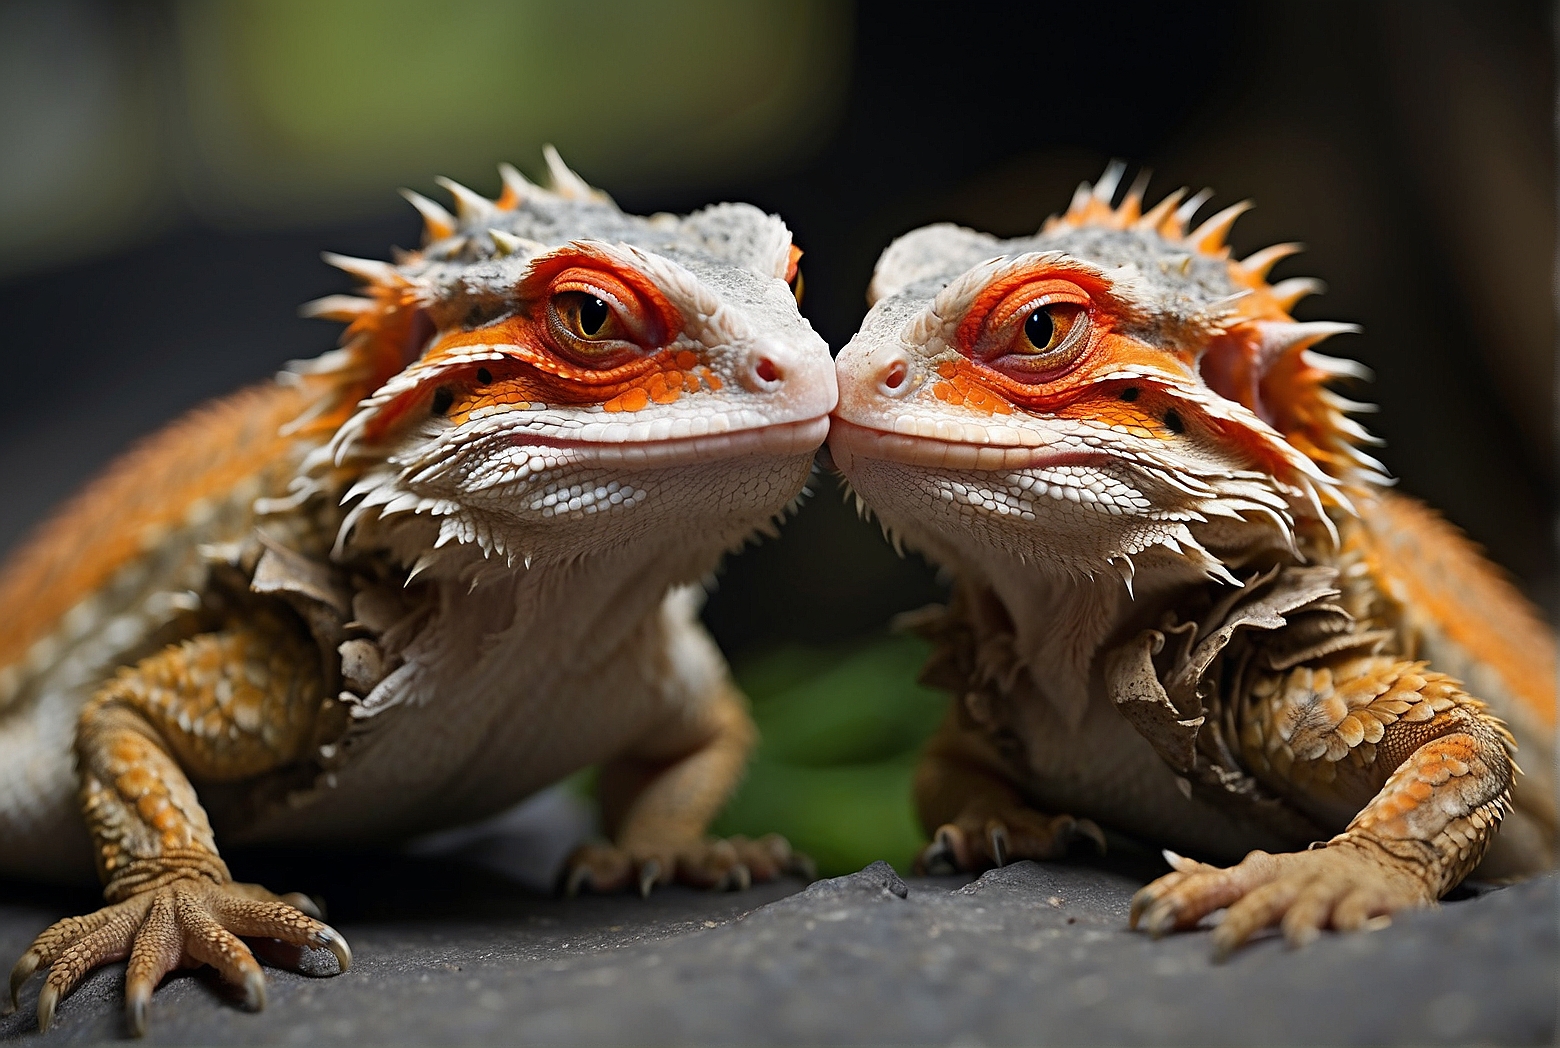 Do Bearded Dragons Like Kisses?